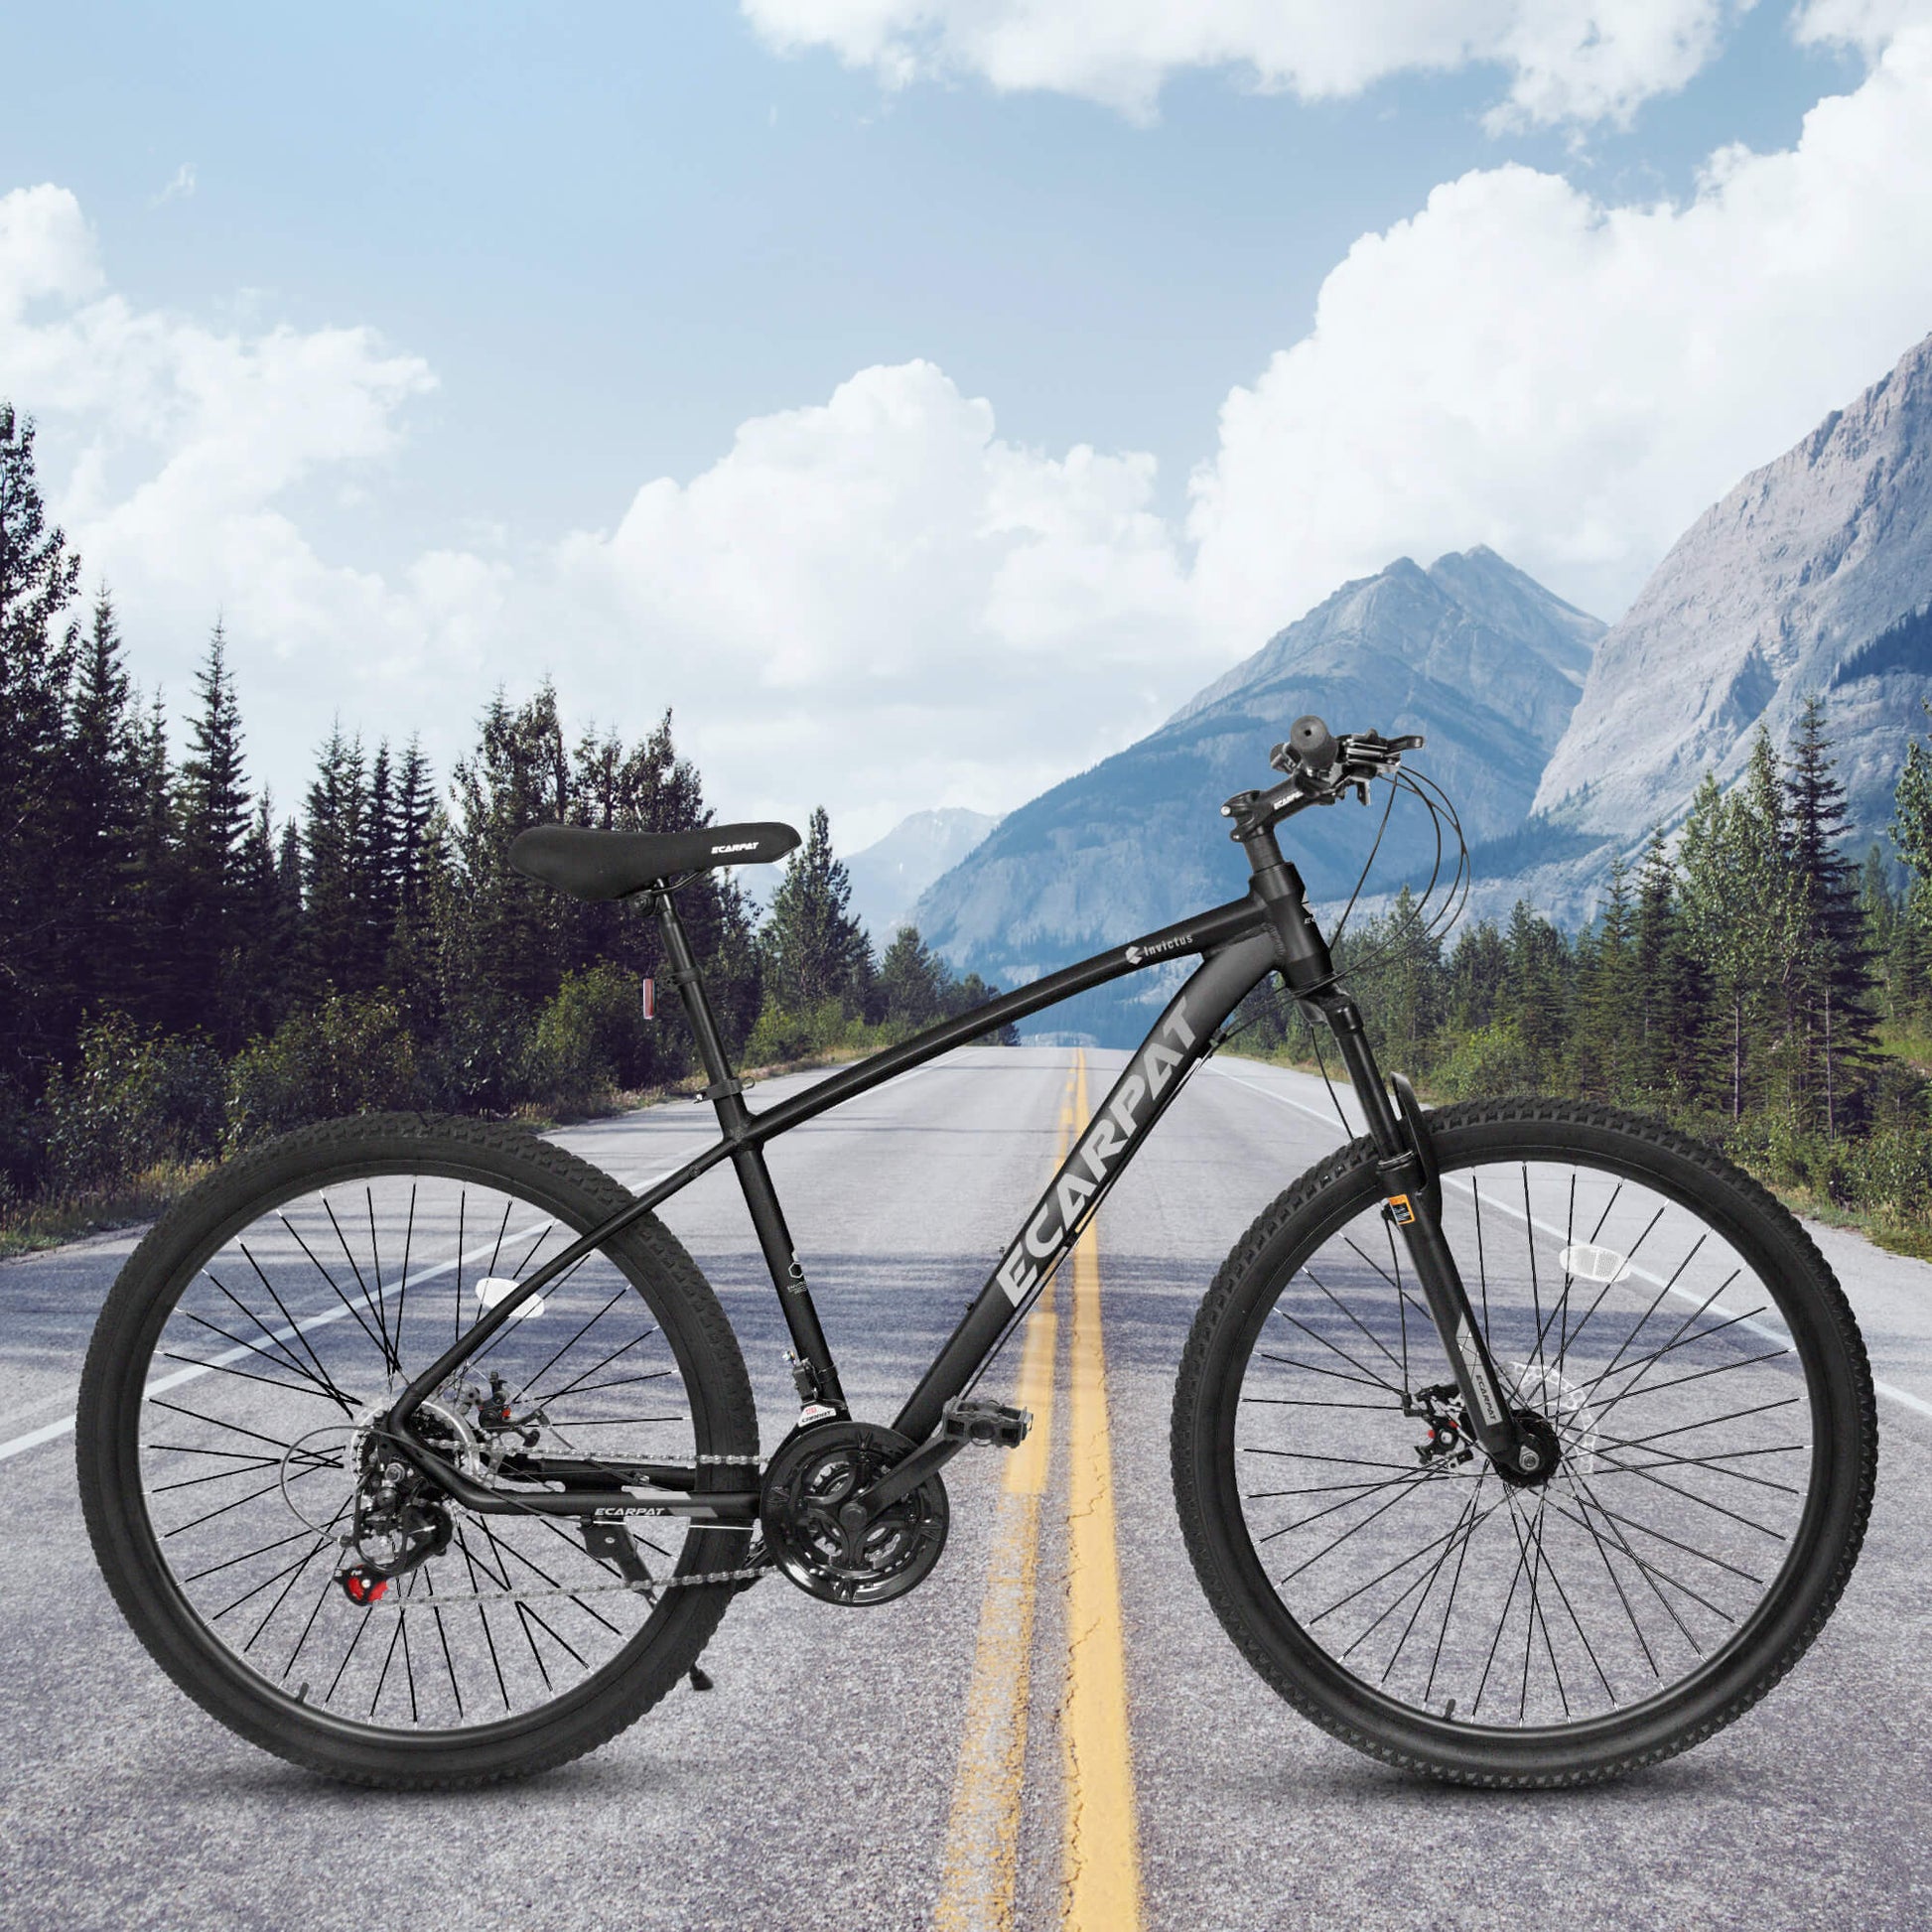 Hycline Ecarpat Tendar X5 27.5x2.125” Mountain And Hybrid Bike Reviewe